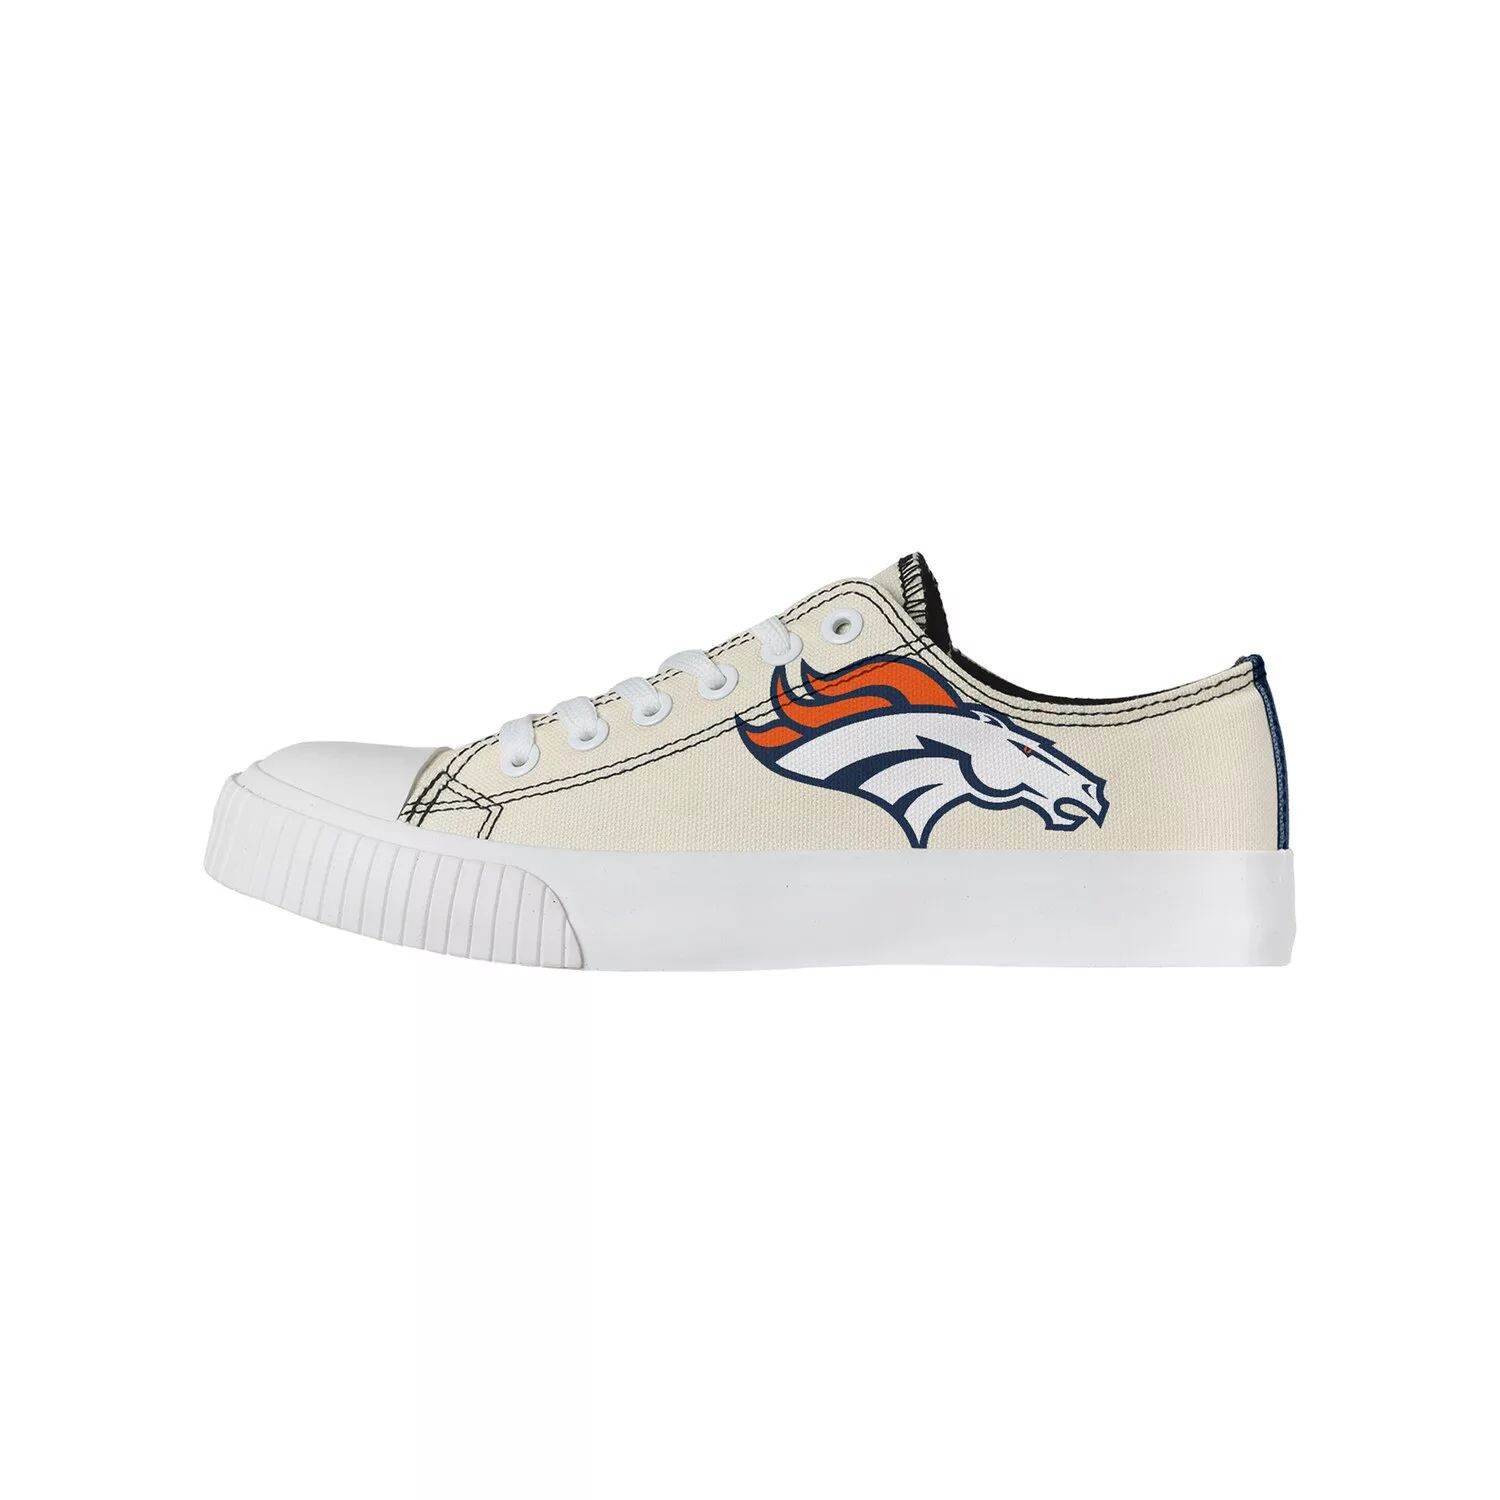 Женские низкие парусиновые туфли FOCO кремового цвета Denver Broncos